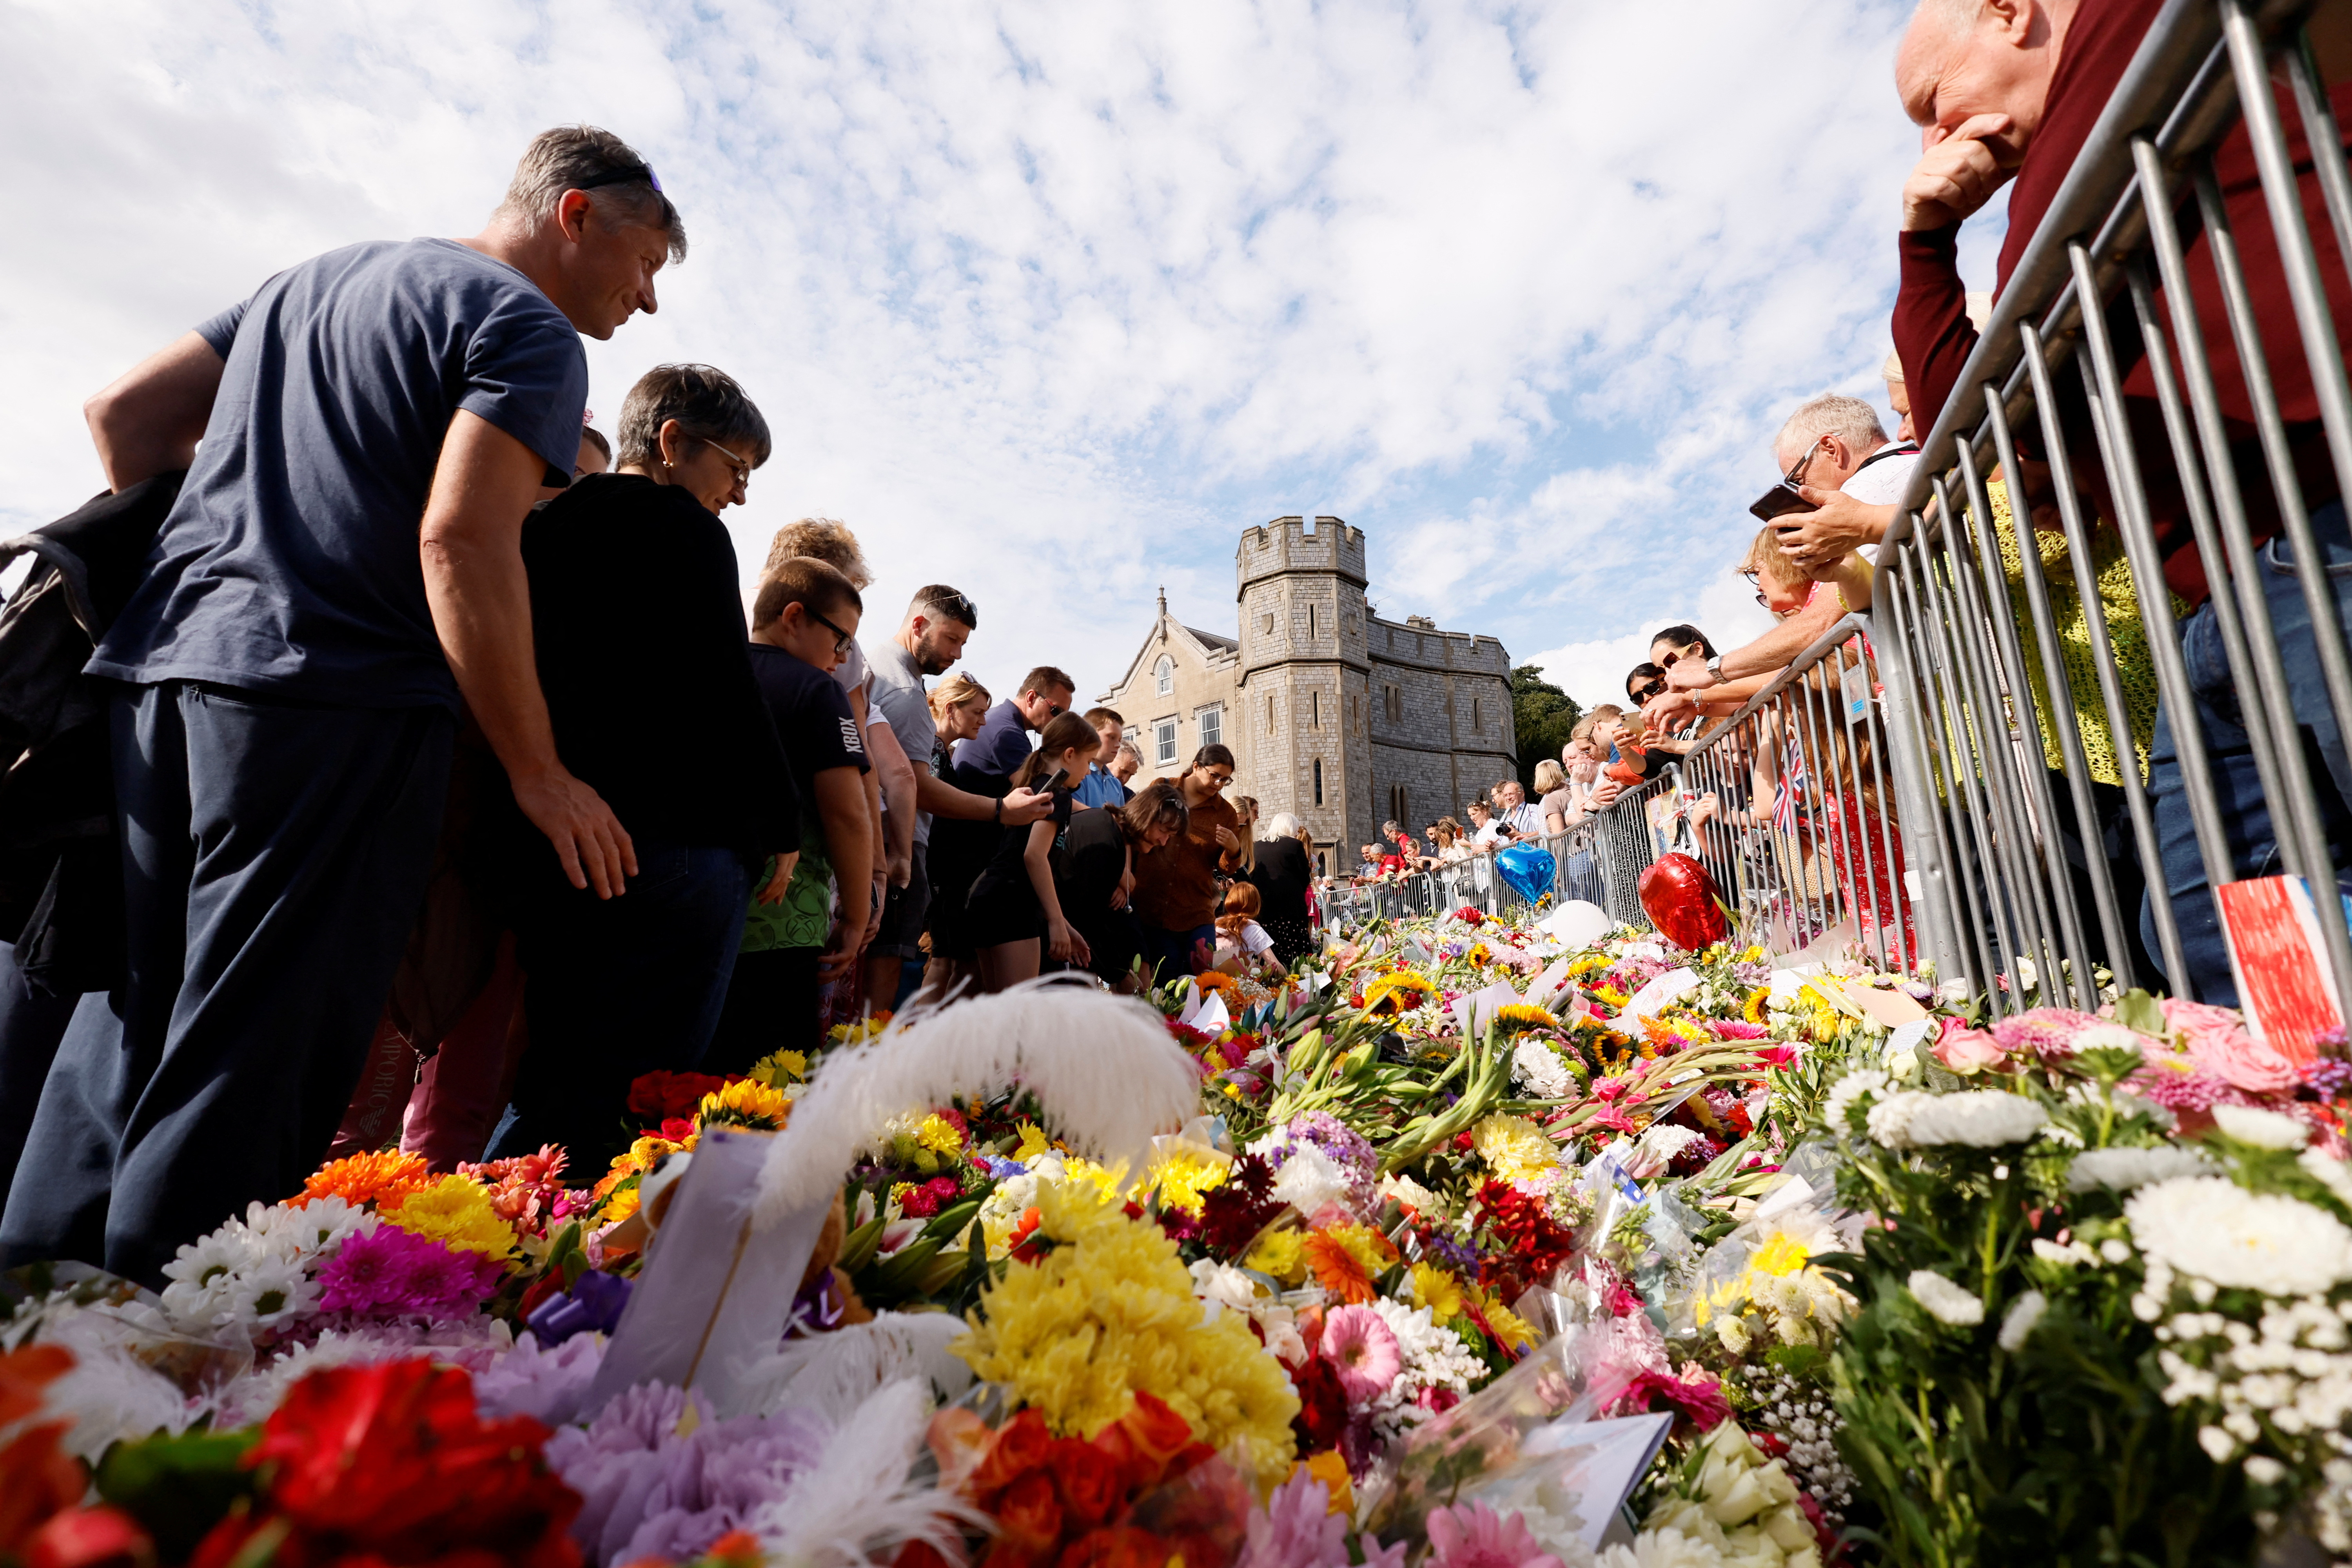 La gente se reúne para poner flores fuera del Castillo de Windsor, tras la muerte de la Reina Isabel. (REUTERS/Andrew Couldridge)